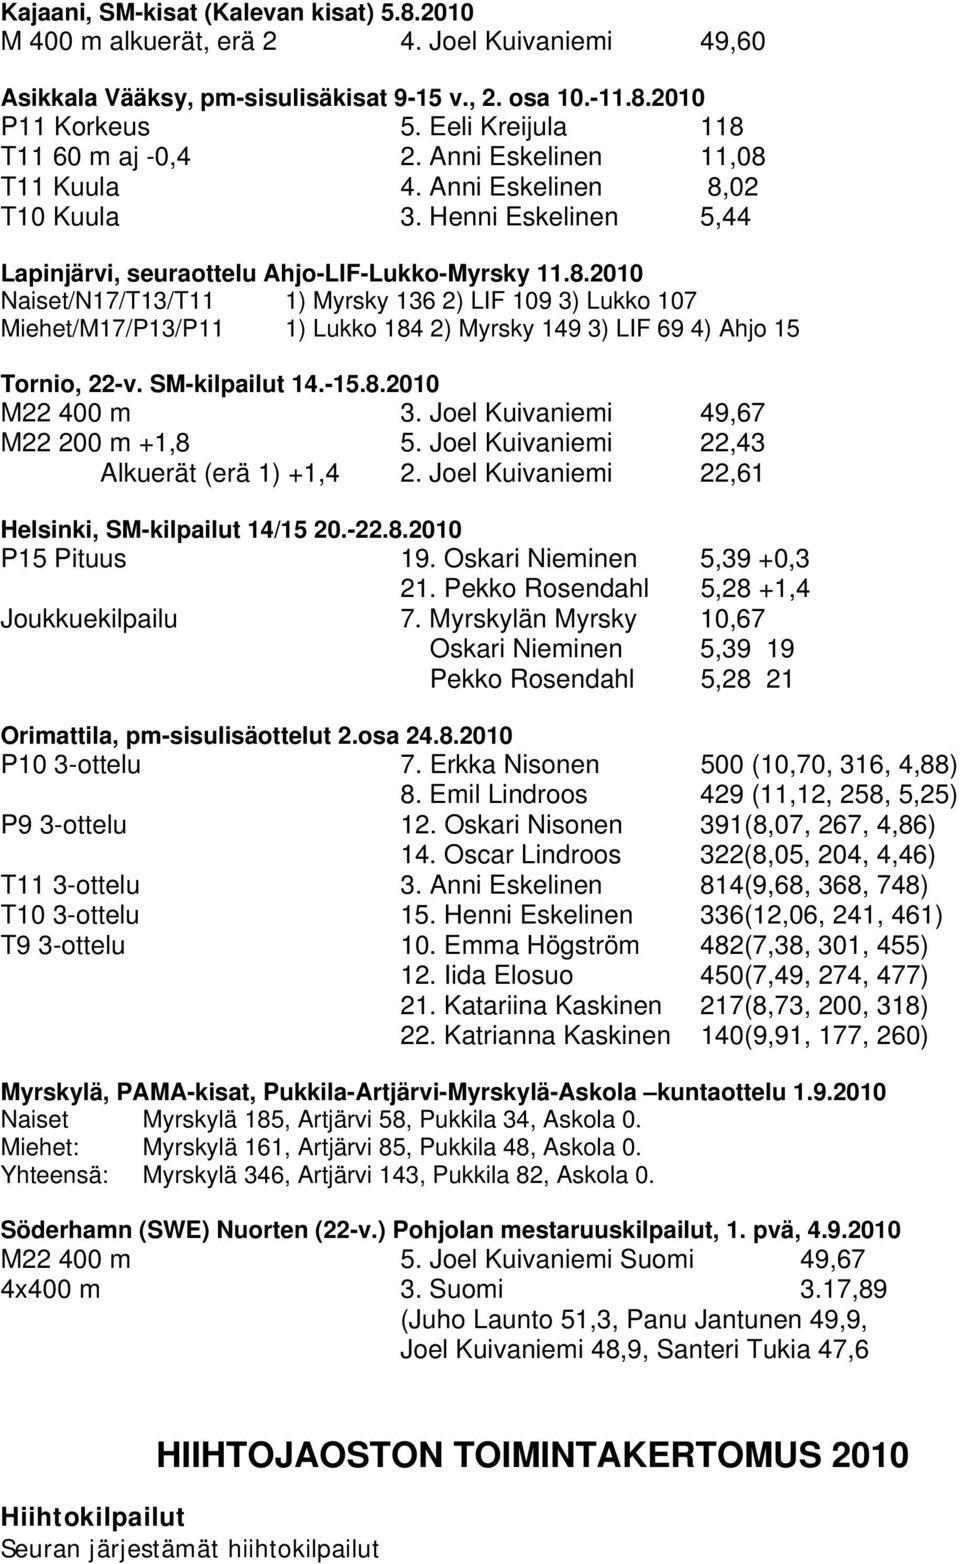 SM-kilpailut 14.-15.8.2010 M22 400 m 3. Jel Kuivaniemi 49,67 M22 200 m +1,8 5. Jel Kuivaniemi 22,43 Alkuerät (erä 1) +1,4 2. Jel Kuivaniemi 22,61 Helsinki, SM-kilpailut 14/15 20.-22.8.2010 P15 Pituus 19.